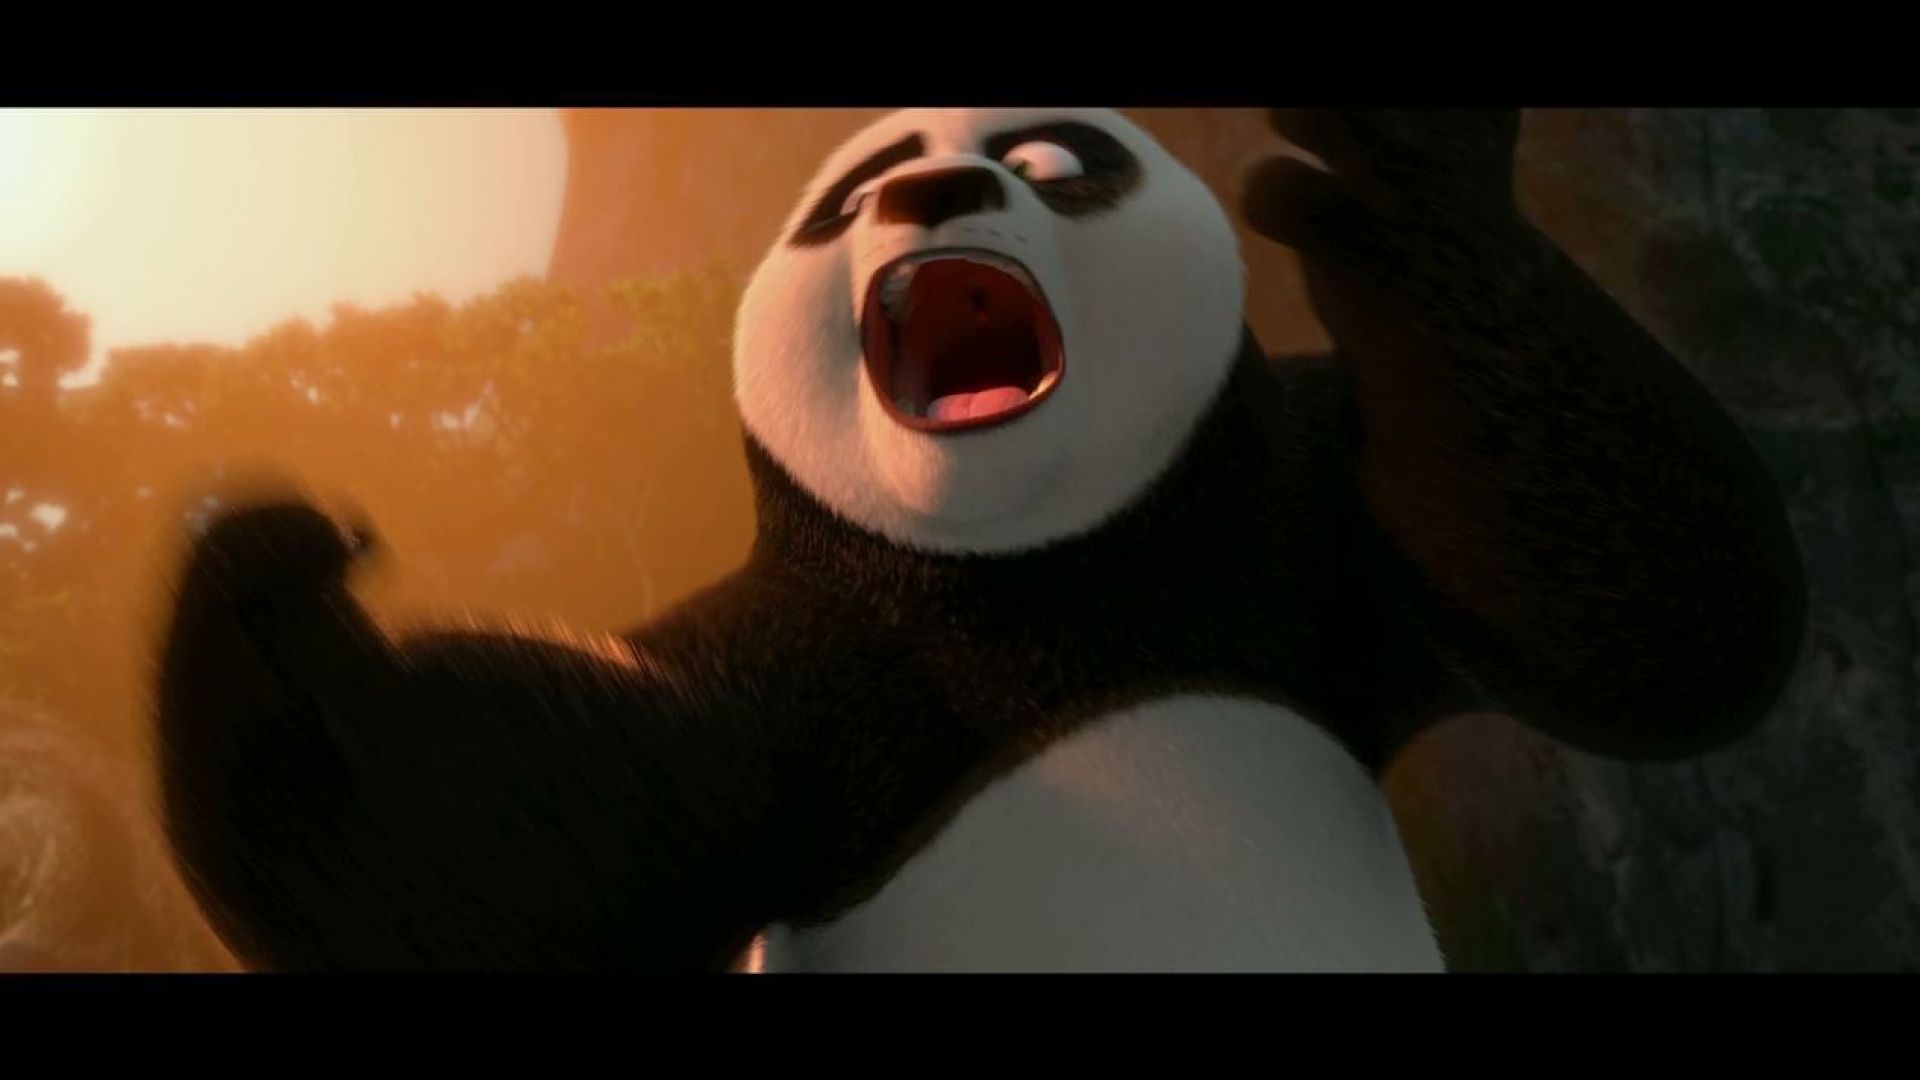 Po in Kung Fu Panda 2 